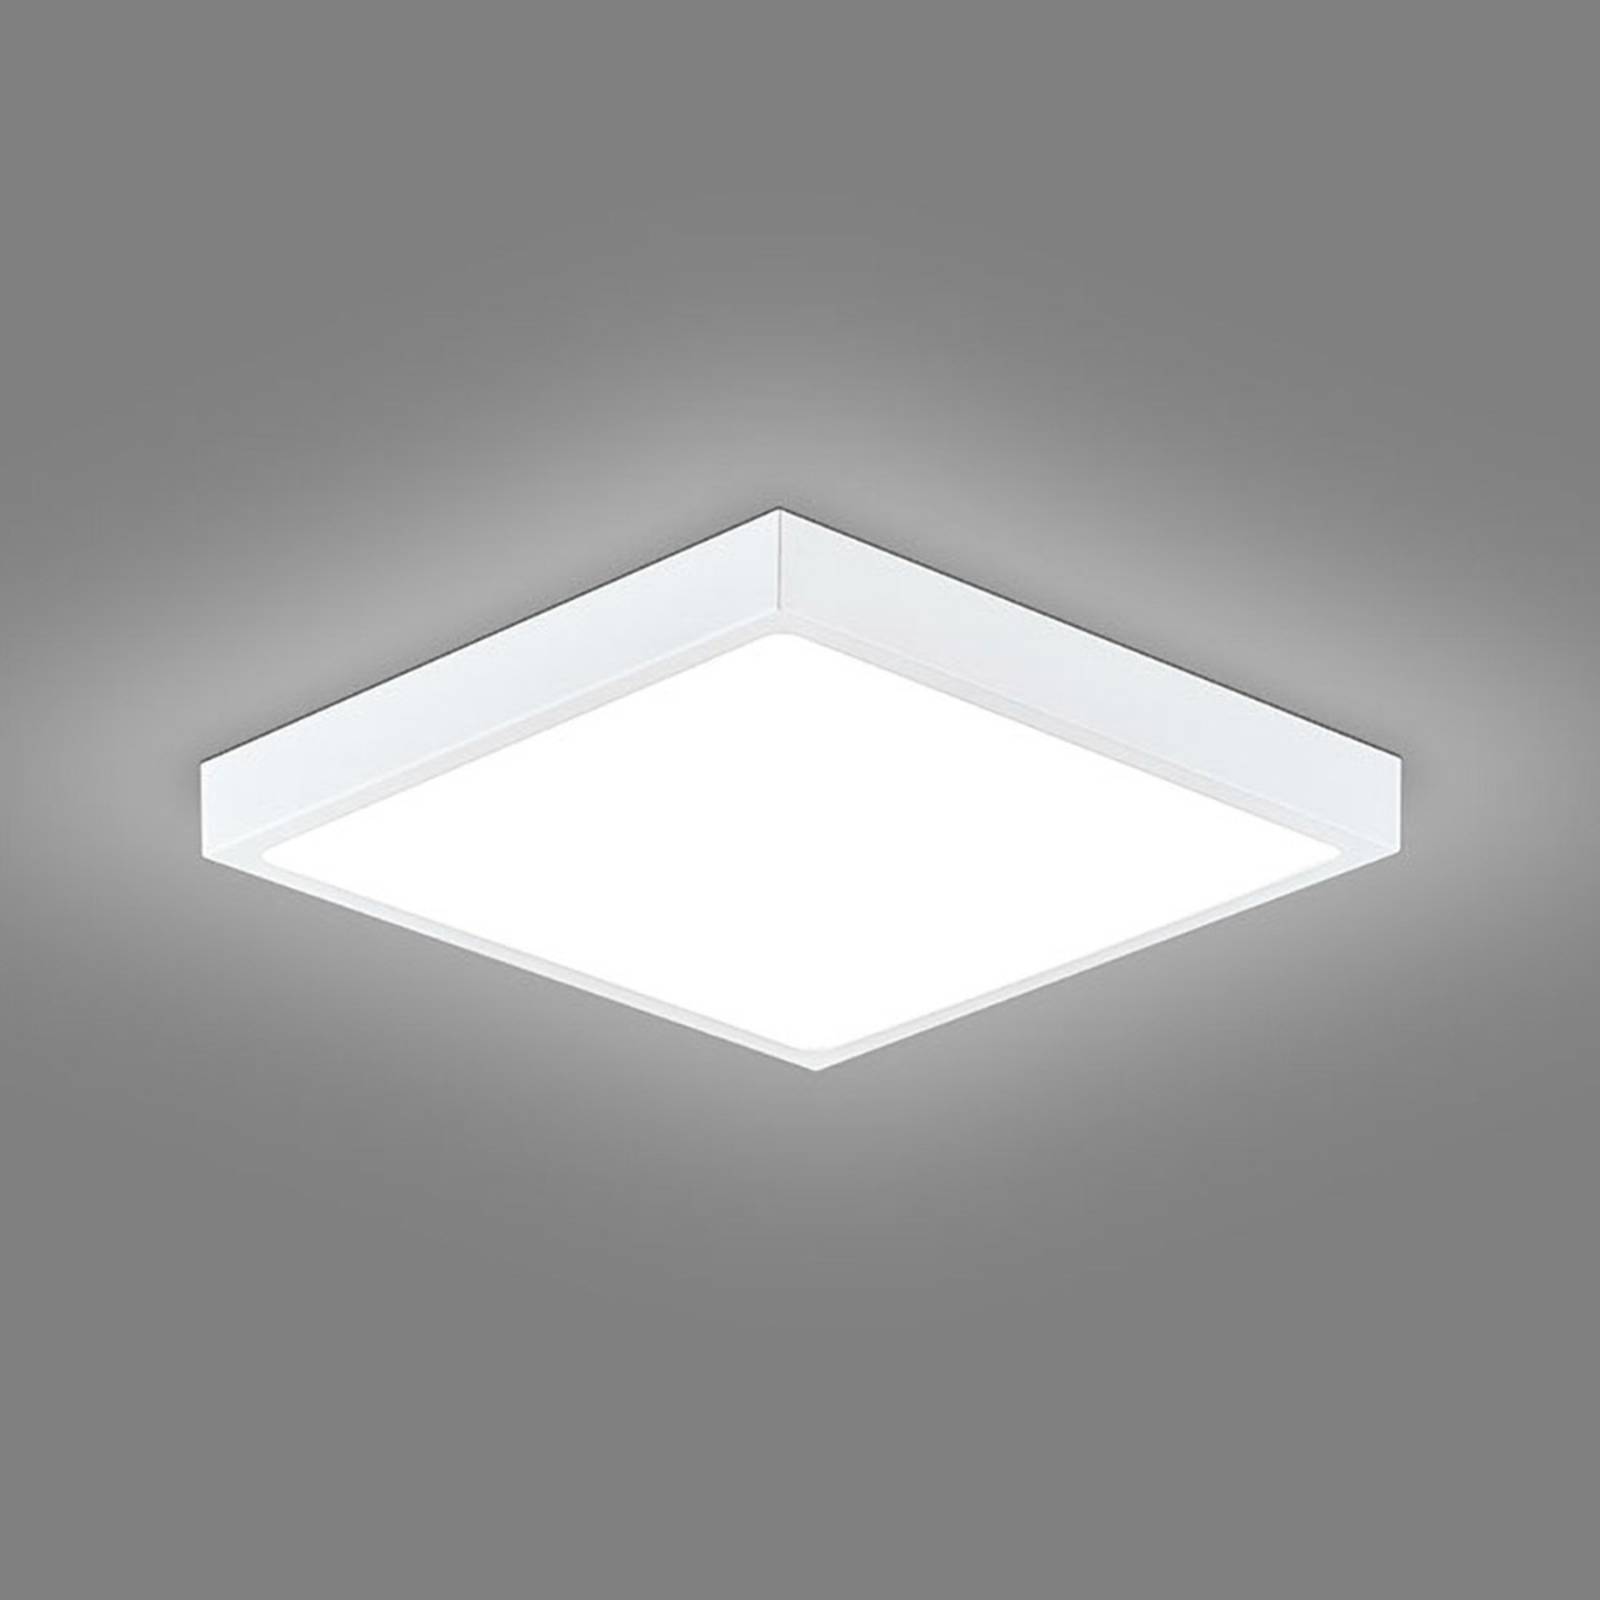 E-shop EVN Planus LED panel 19,1 x 19,1 cm 18W 3 000K